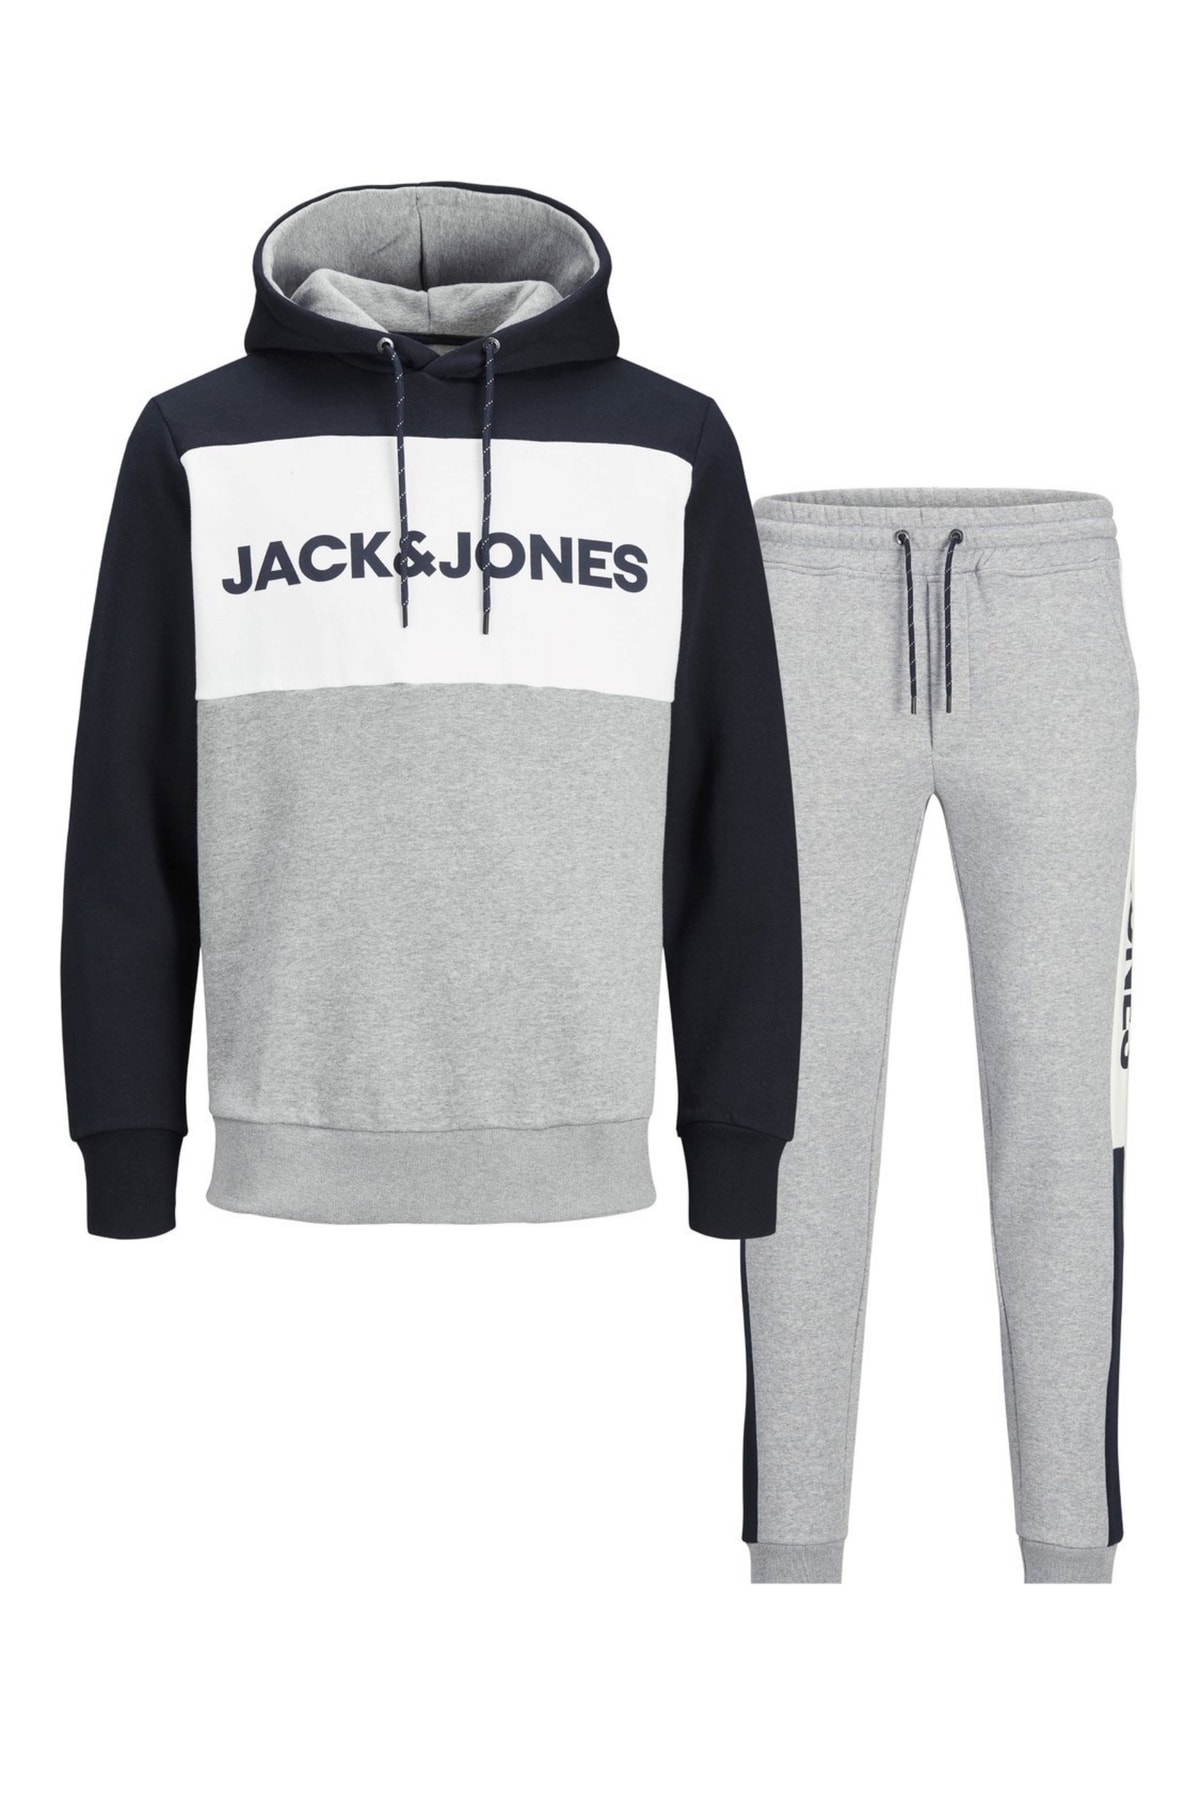 Jack & Jones Trainingsanzug Mehrfarbig Regular Fit